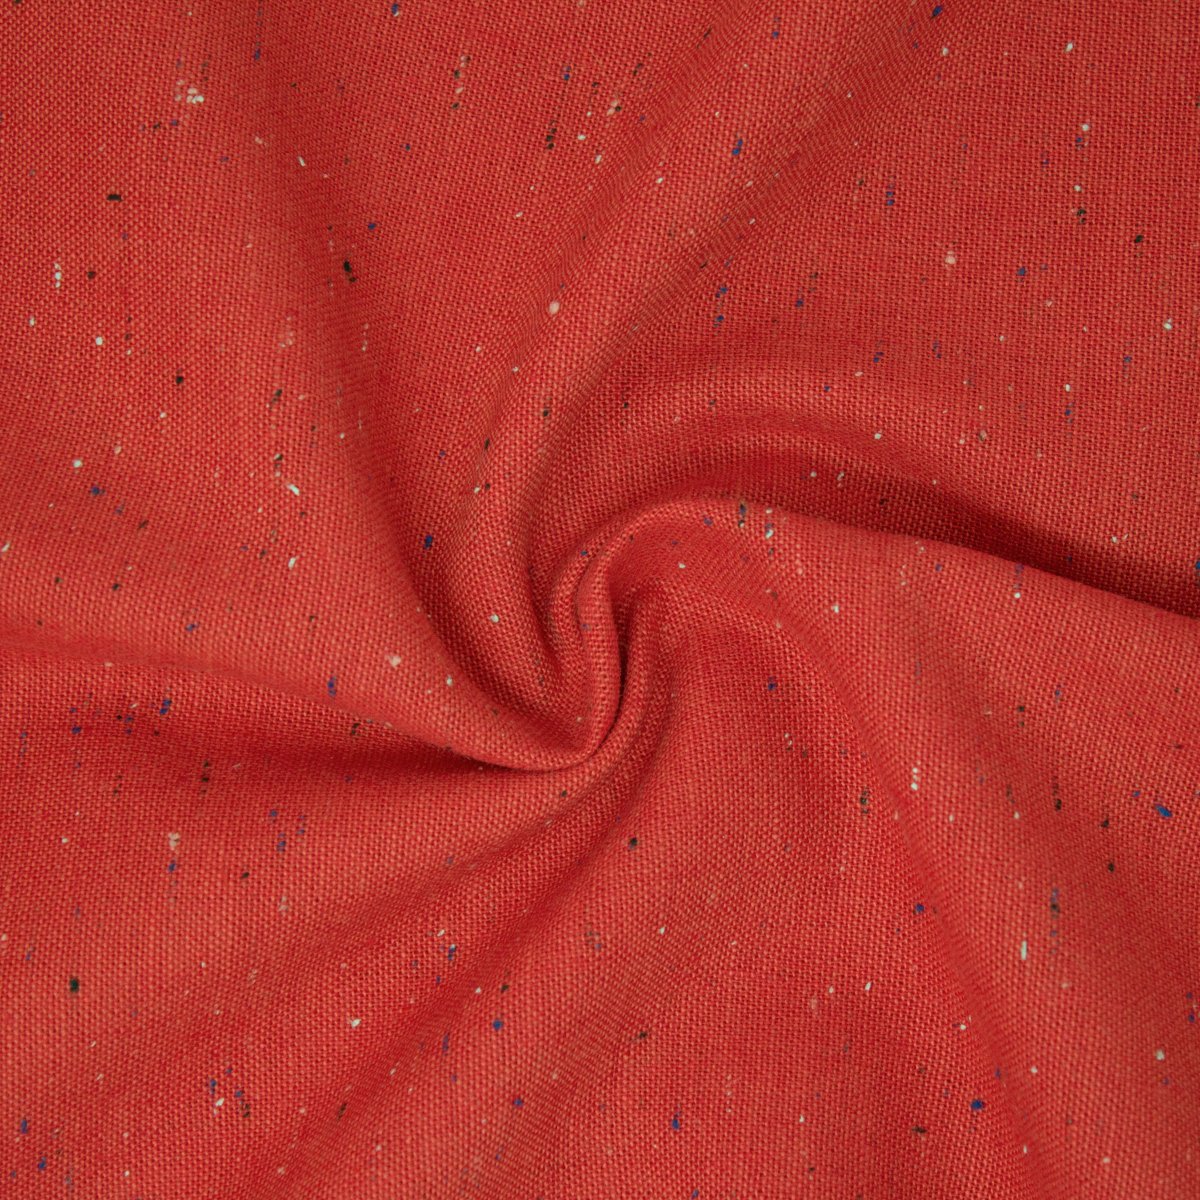 Essex Linen Cotton Speckle Red ½ yd